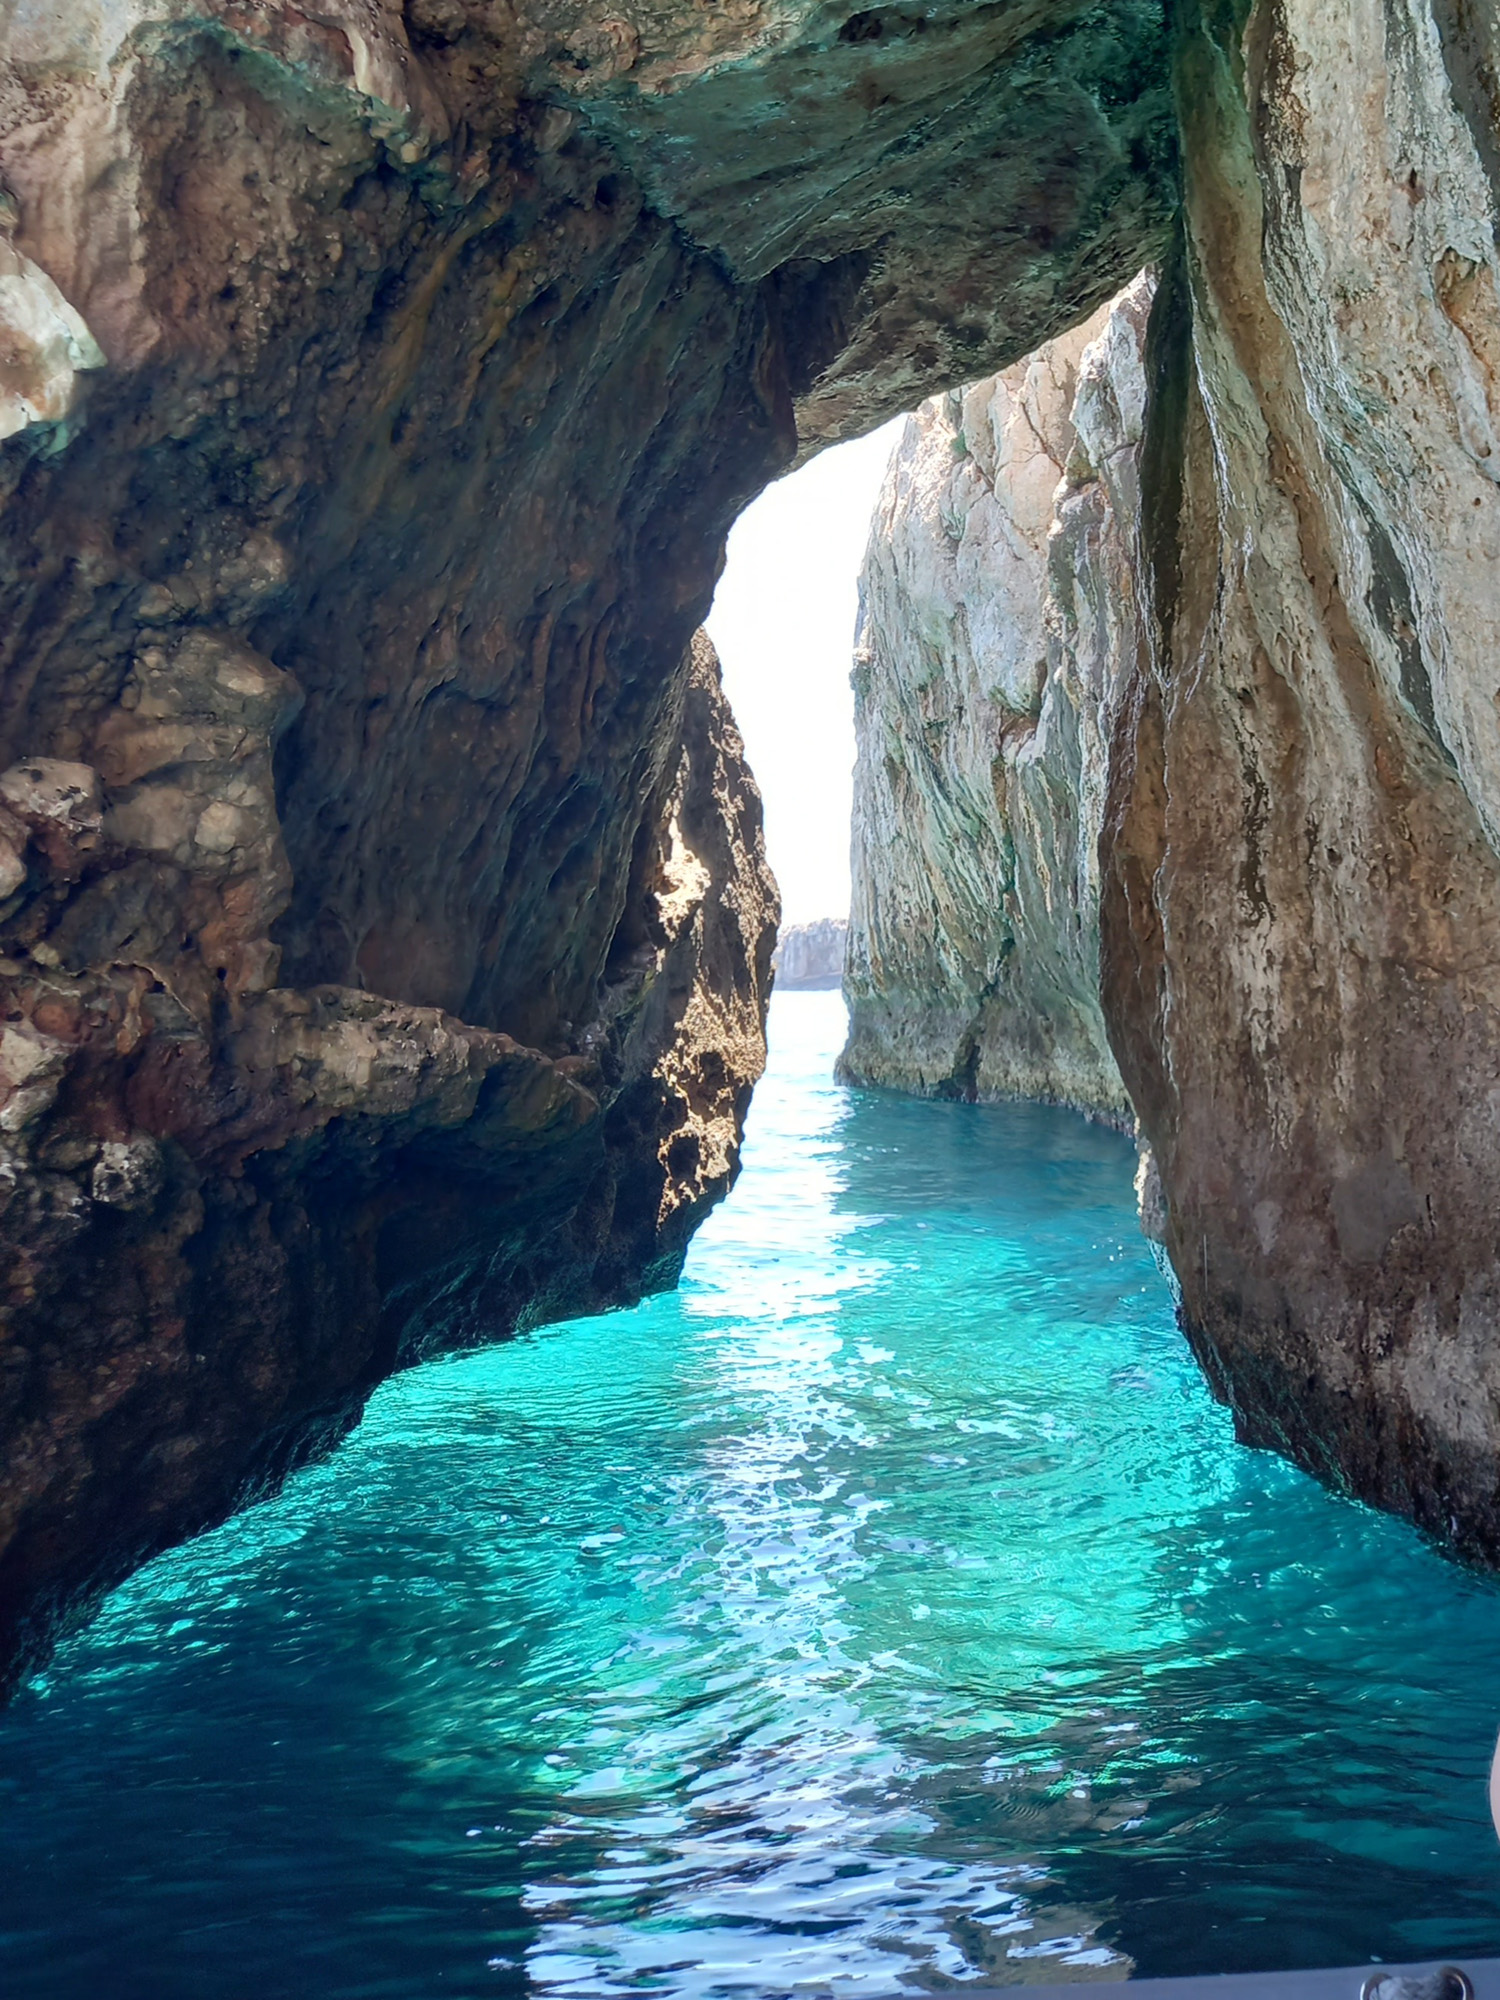 morskie jaskinie, niesamowite doznania na wakacjach i kolor wody